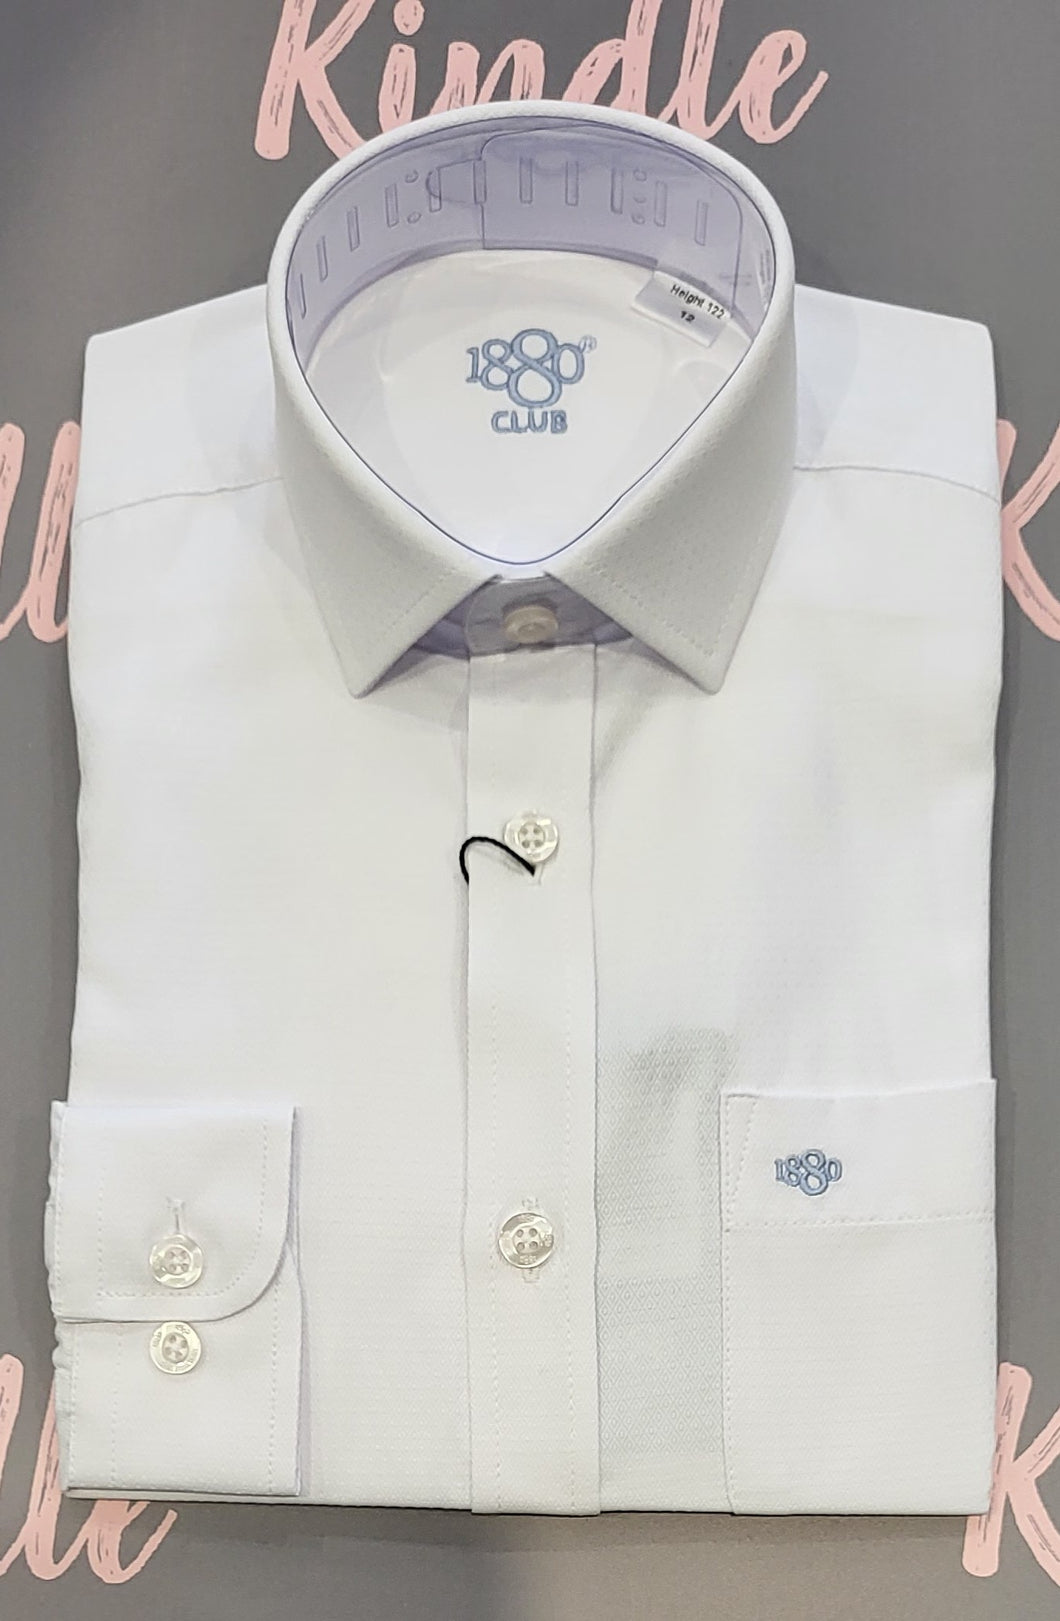 1880 Club White Shirt